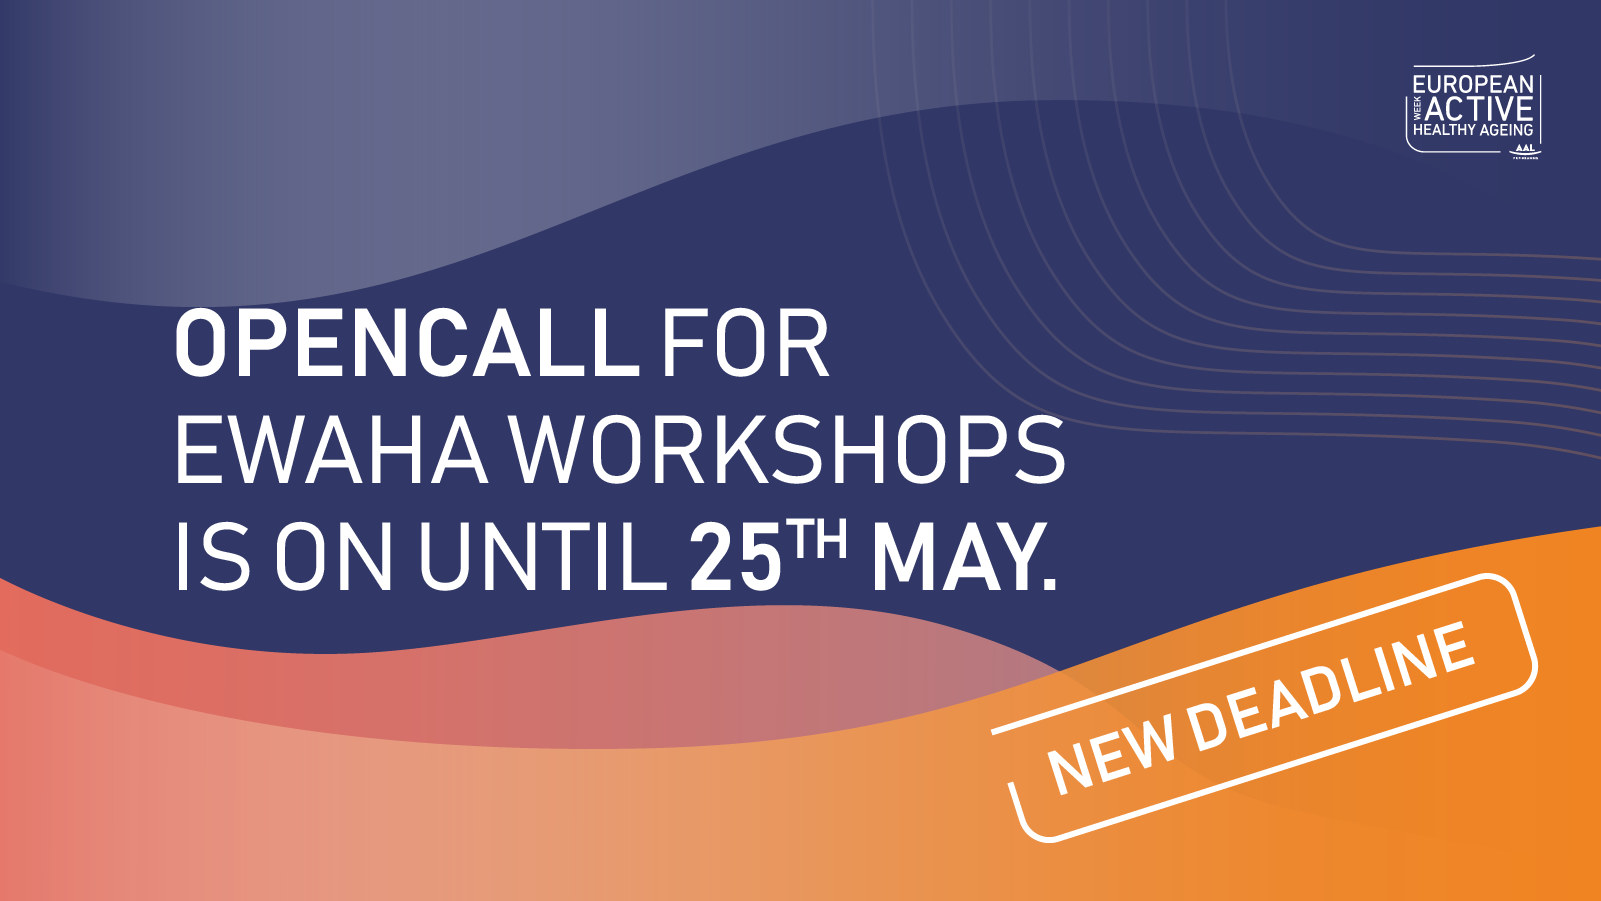 New deadline for EWAHA workshops